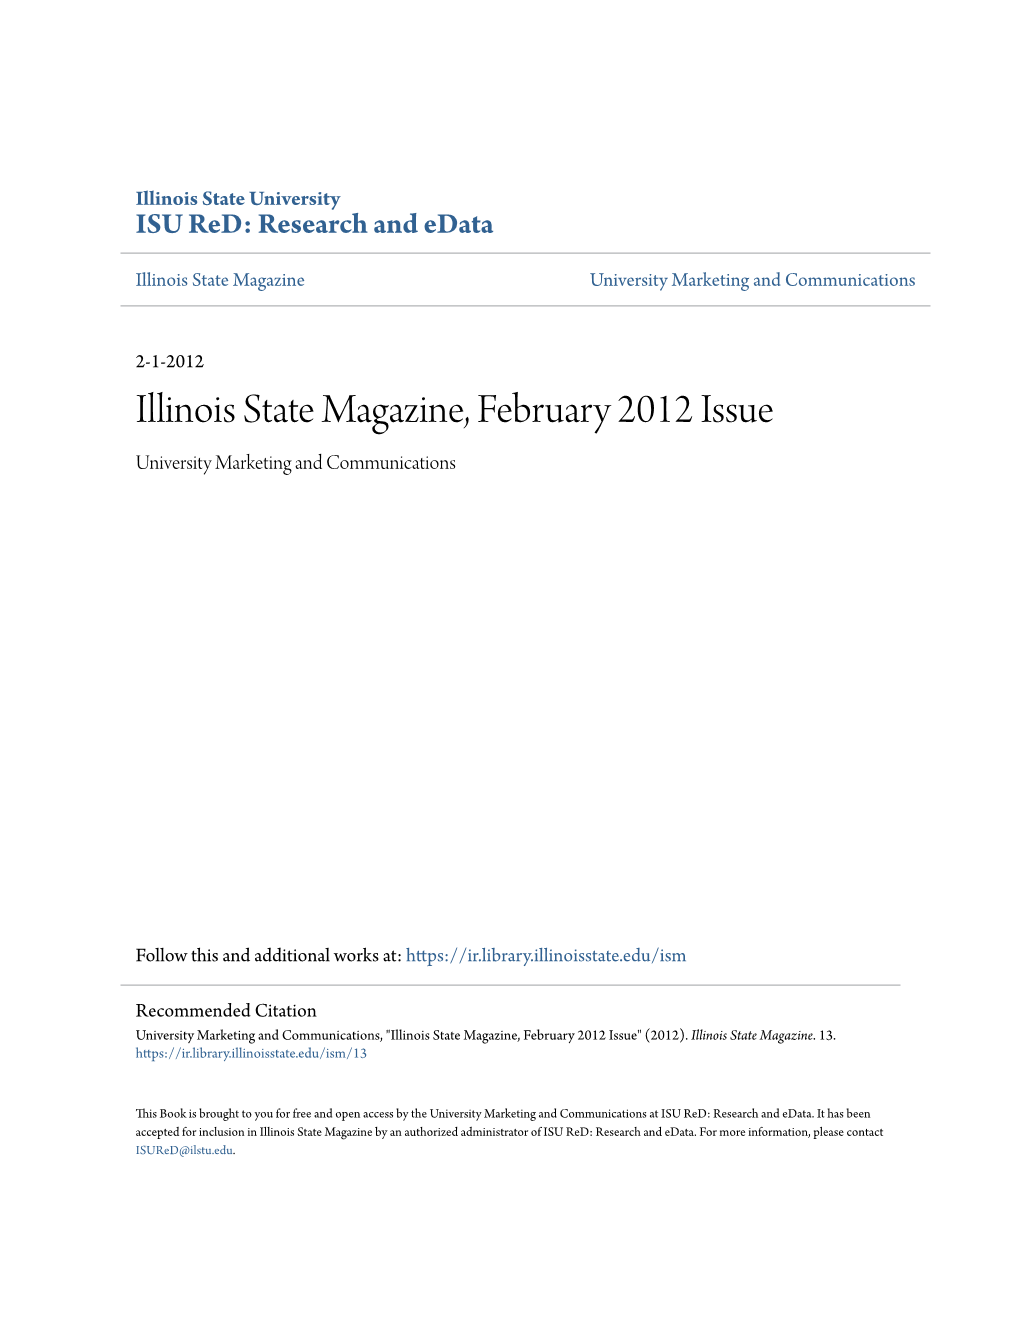 Illinois State Magazine, February 2012 Issue University Marketing and Communications